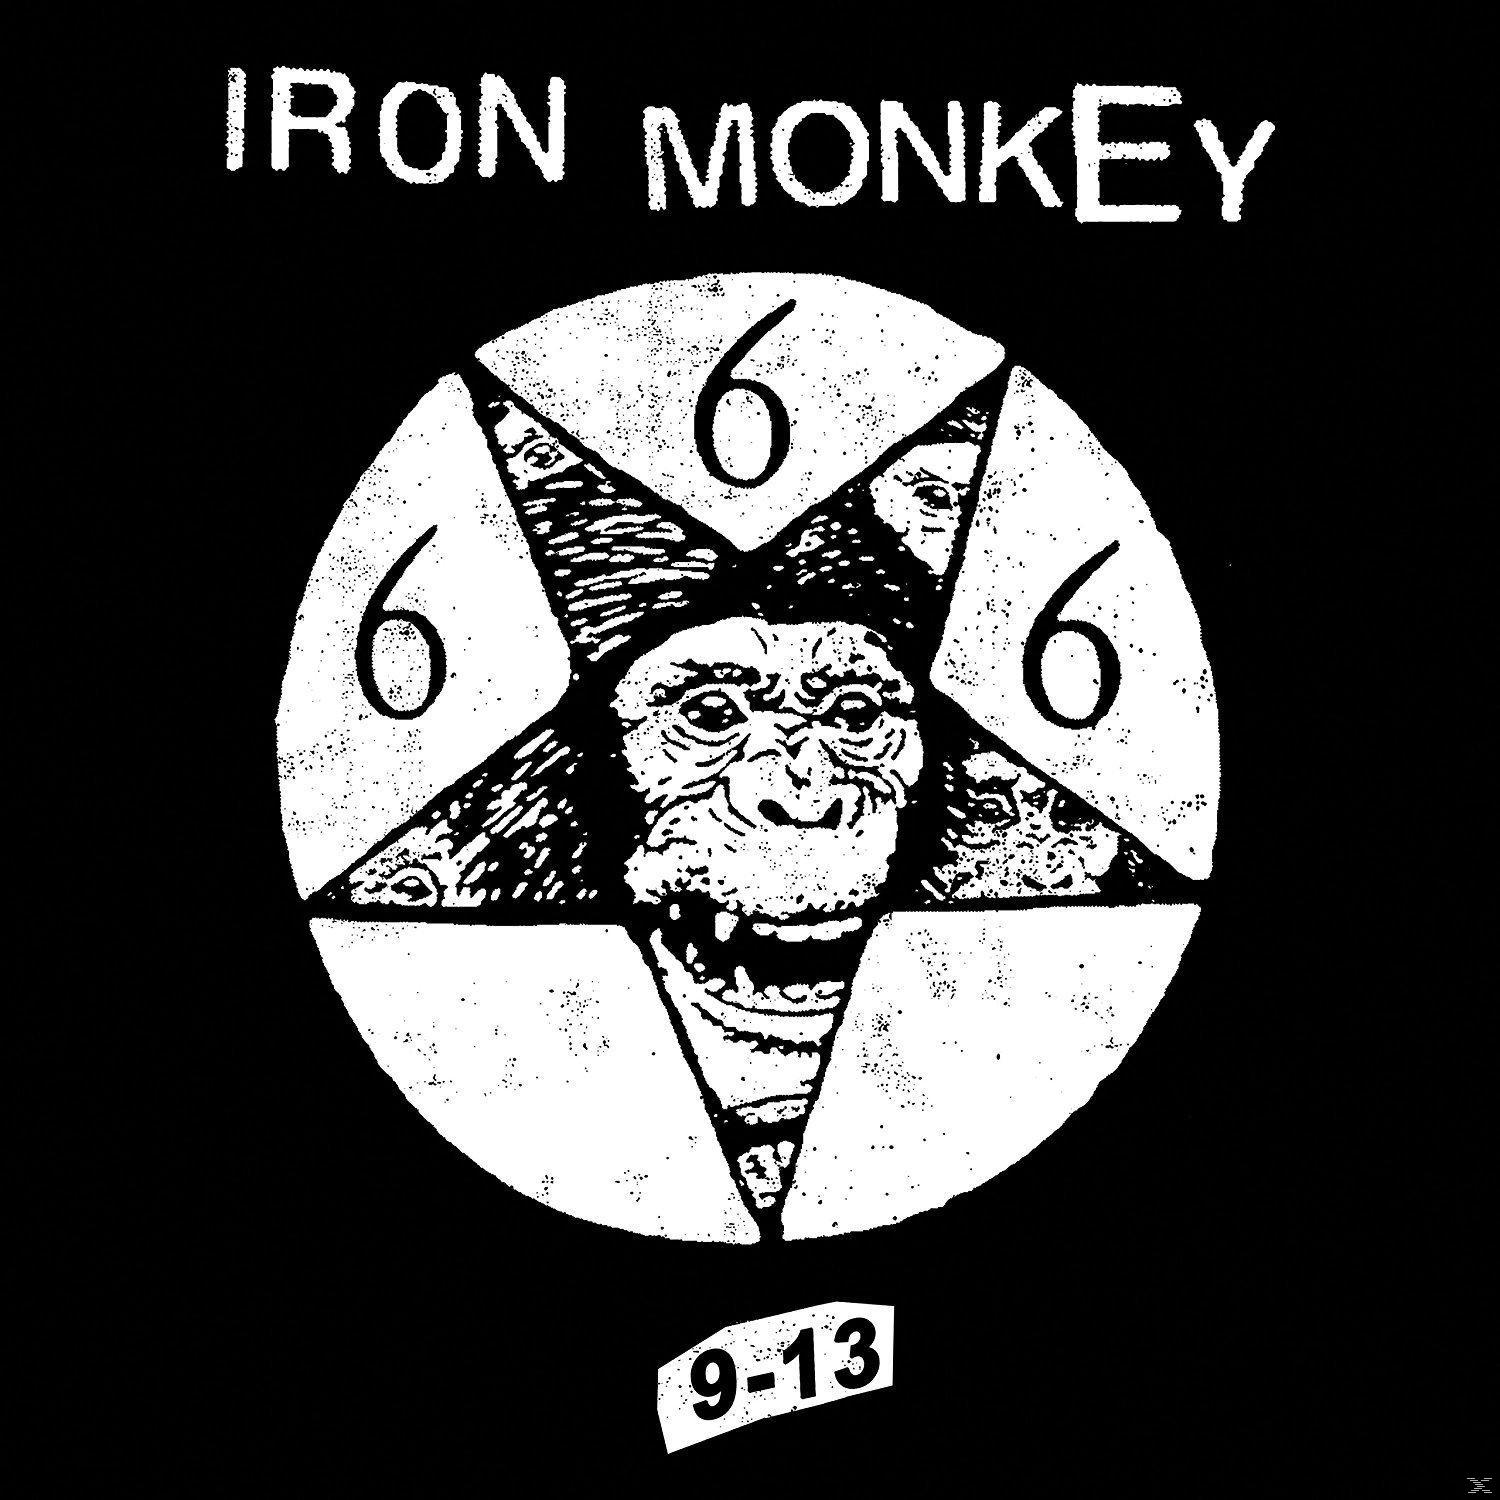 Iron Monkey - (Vinyl) LP+MP3) (Black 9-13 